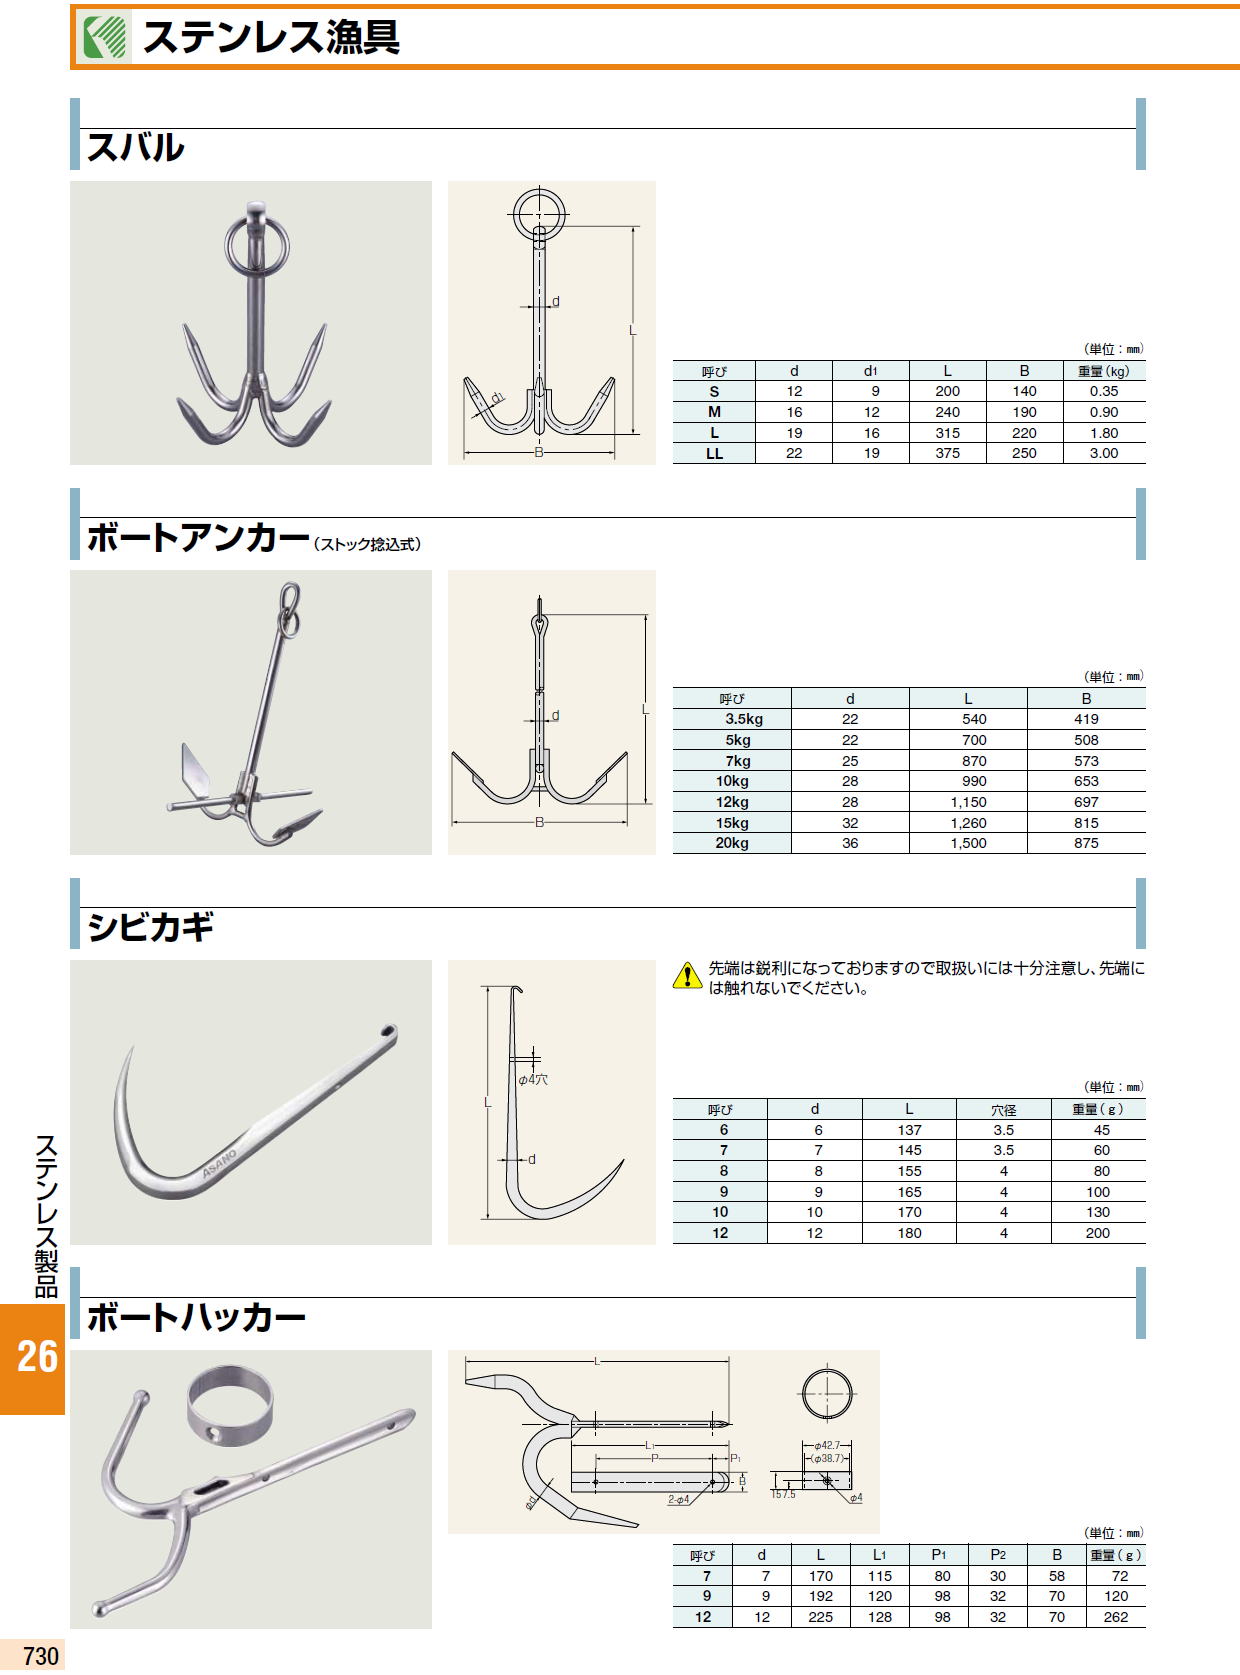 ステンレス漁具 / スバル / ボートアンカー（ストック捻込式） / シビカギ / ボートハッカー